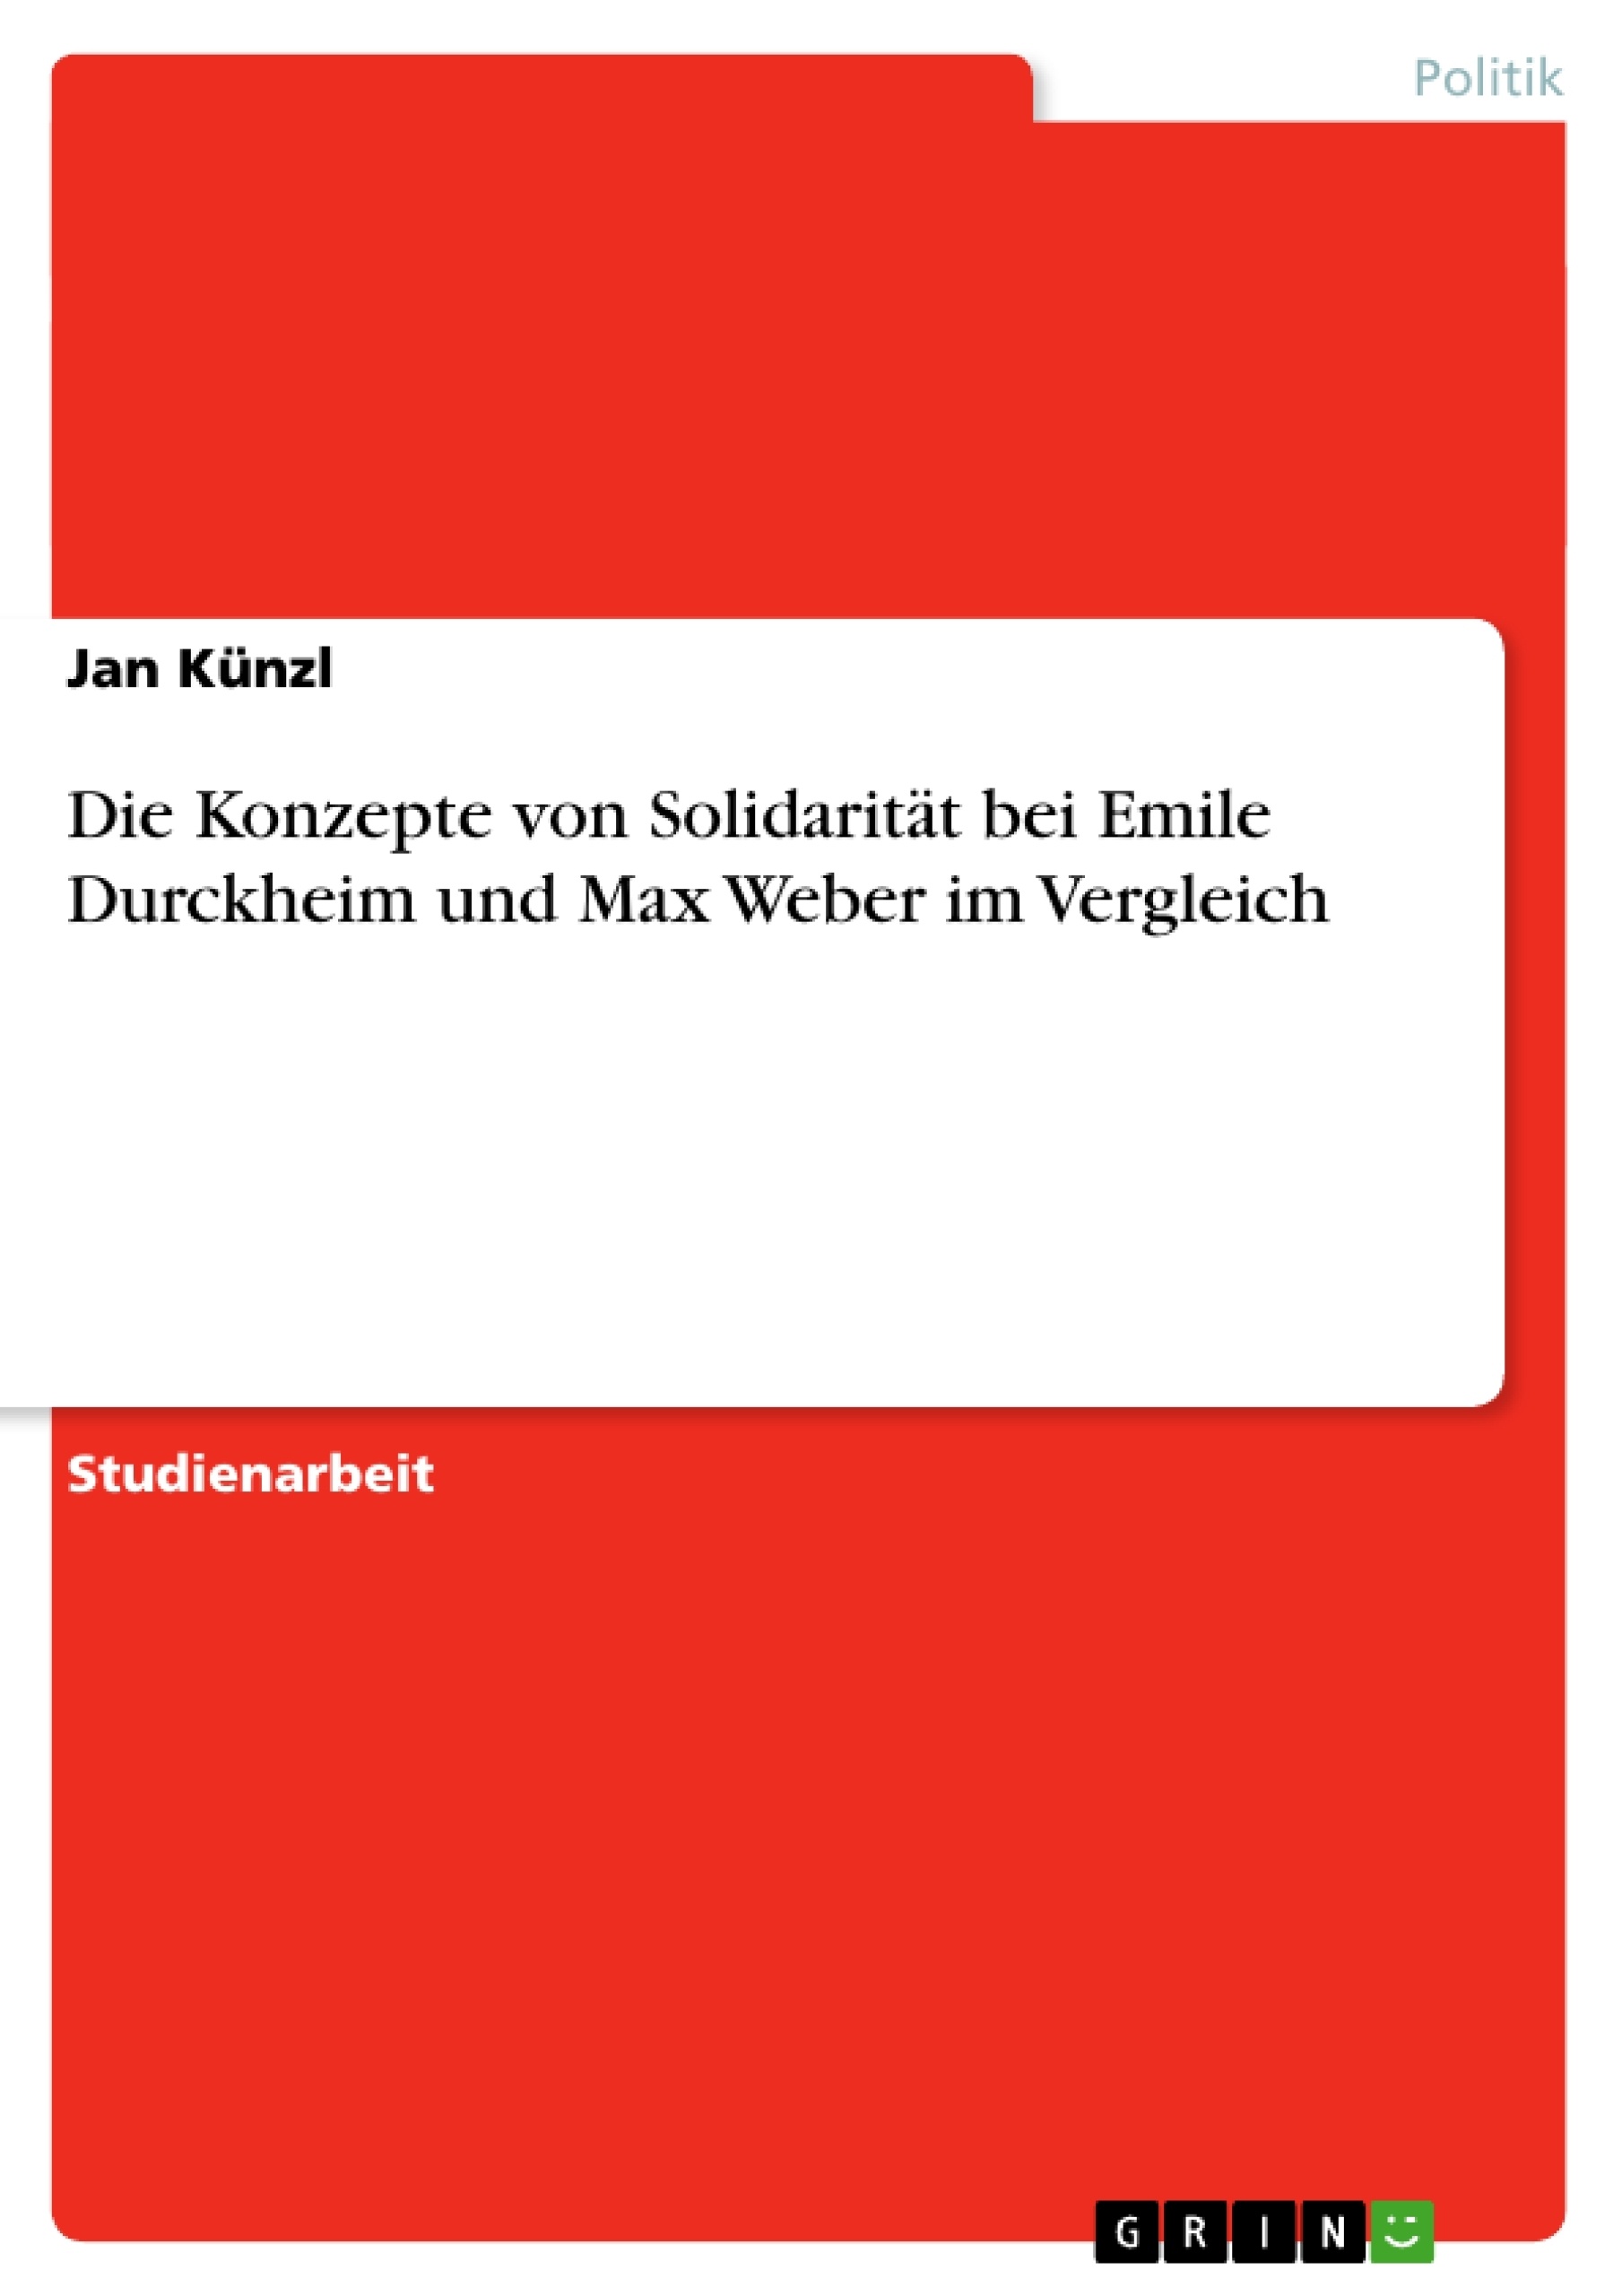 Title: Die Konzepte von Solidarität bei Emile Durckheim und Max Weber im Vergleich